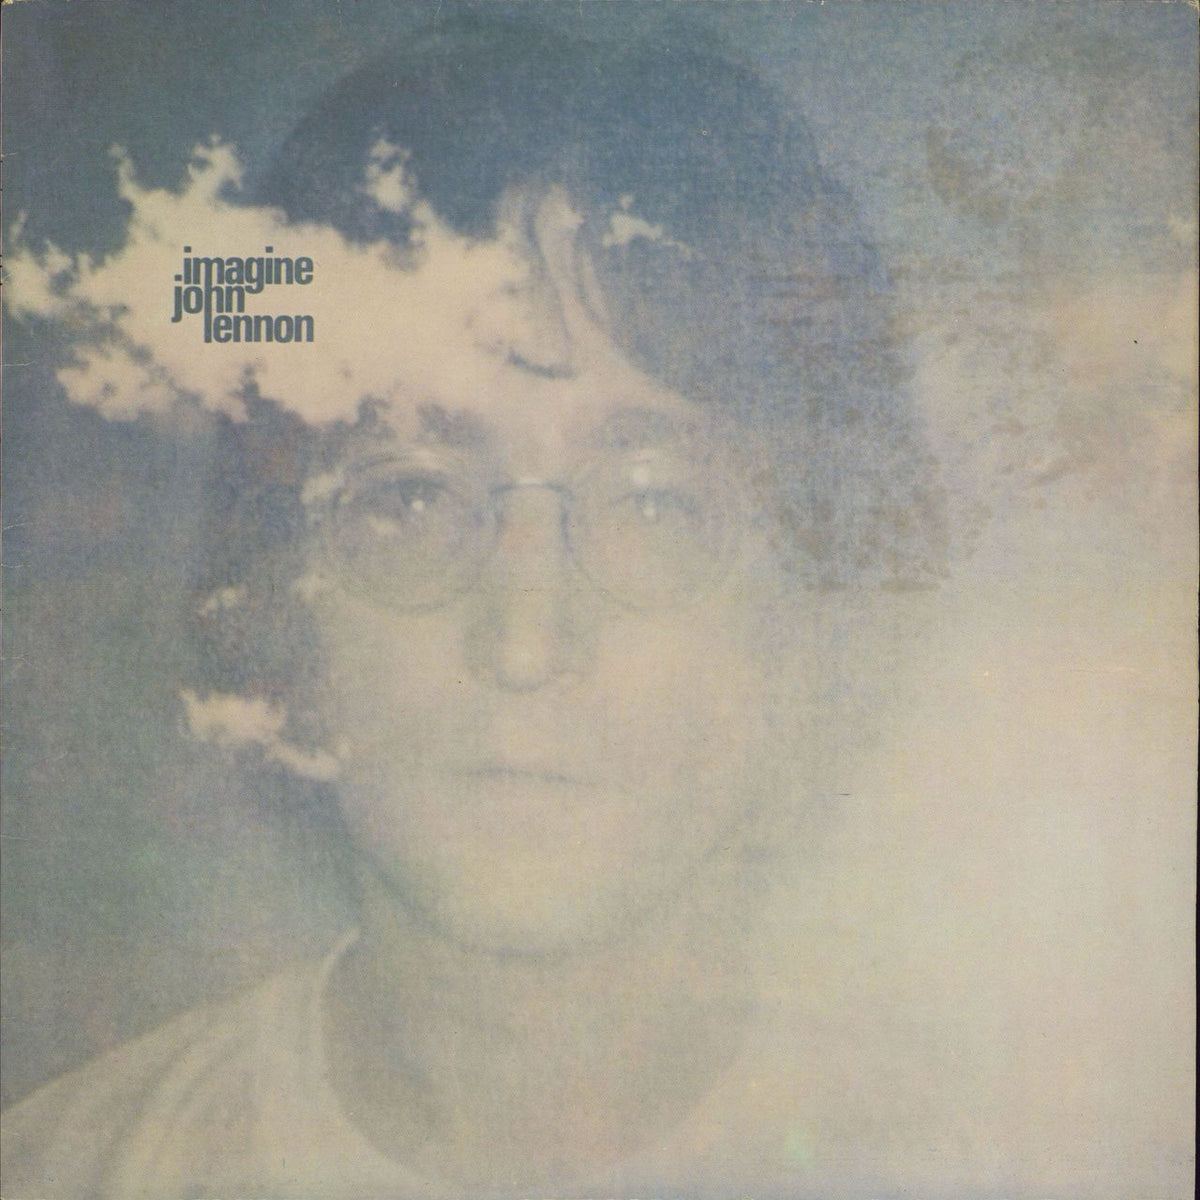 John Lennon Imagine + Poster - 80s UK Vinyl RareVinyl.com